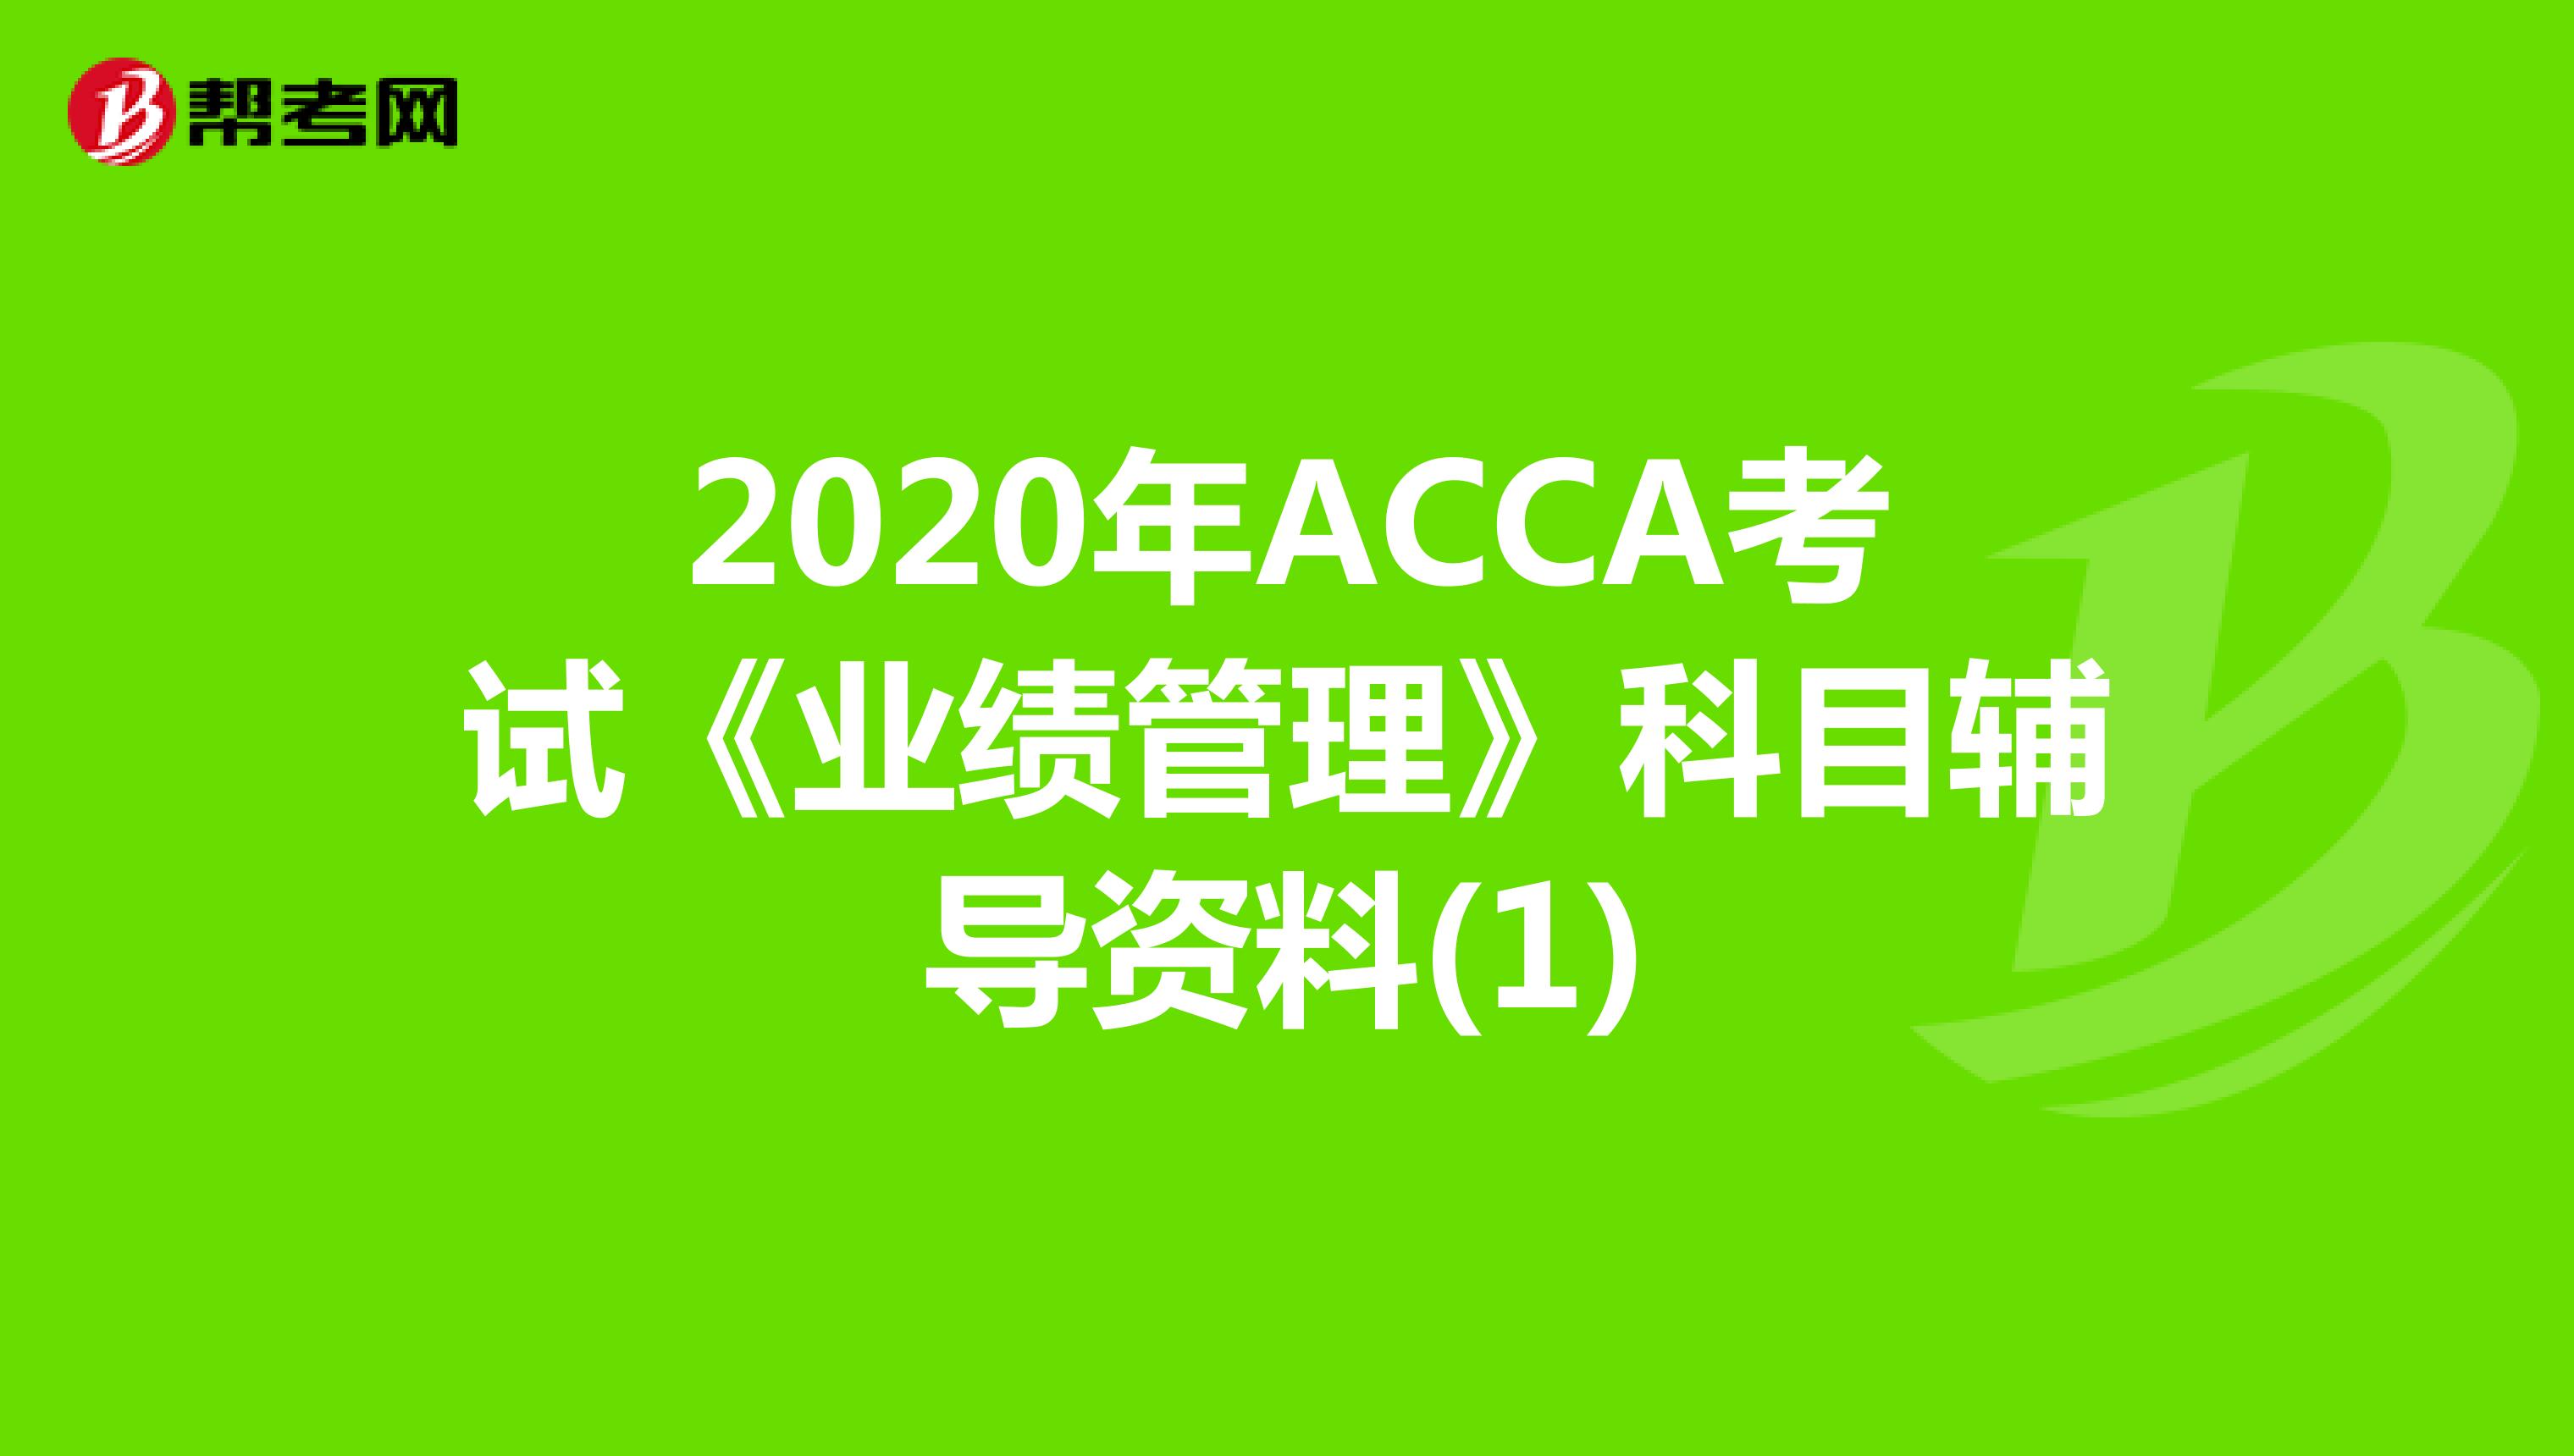 2020年ACCA考试《业绩管理》科目辅导资料(1)